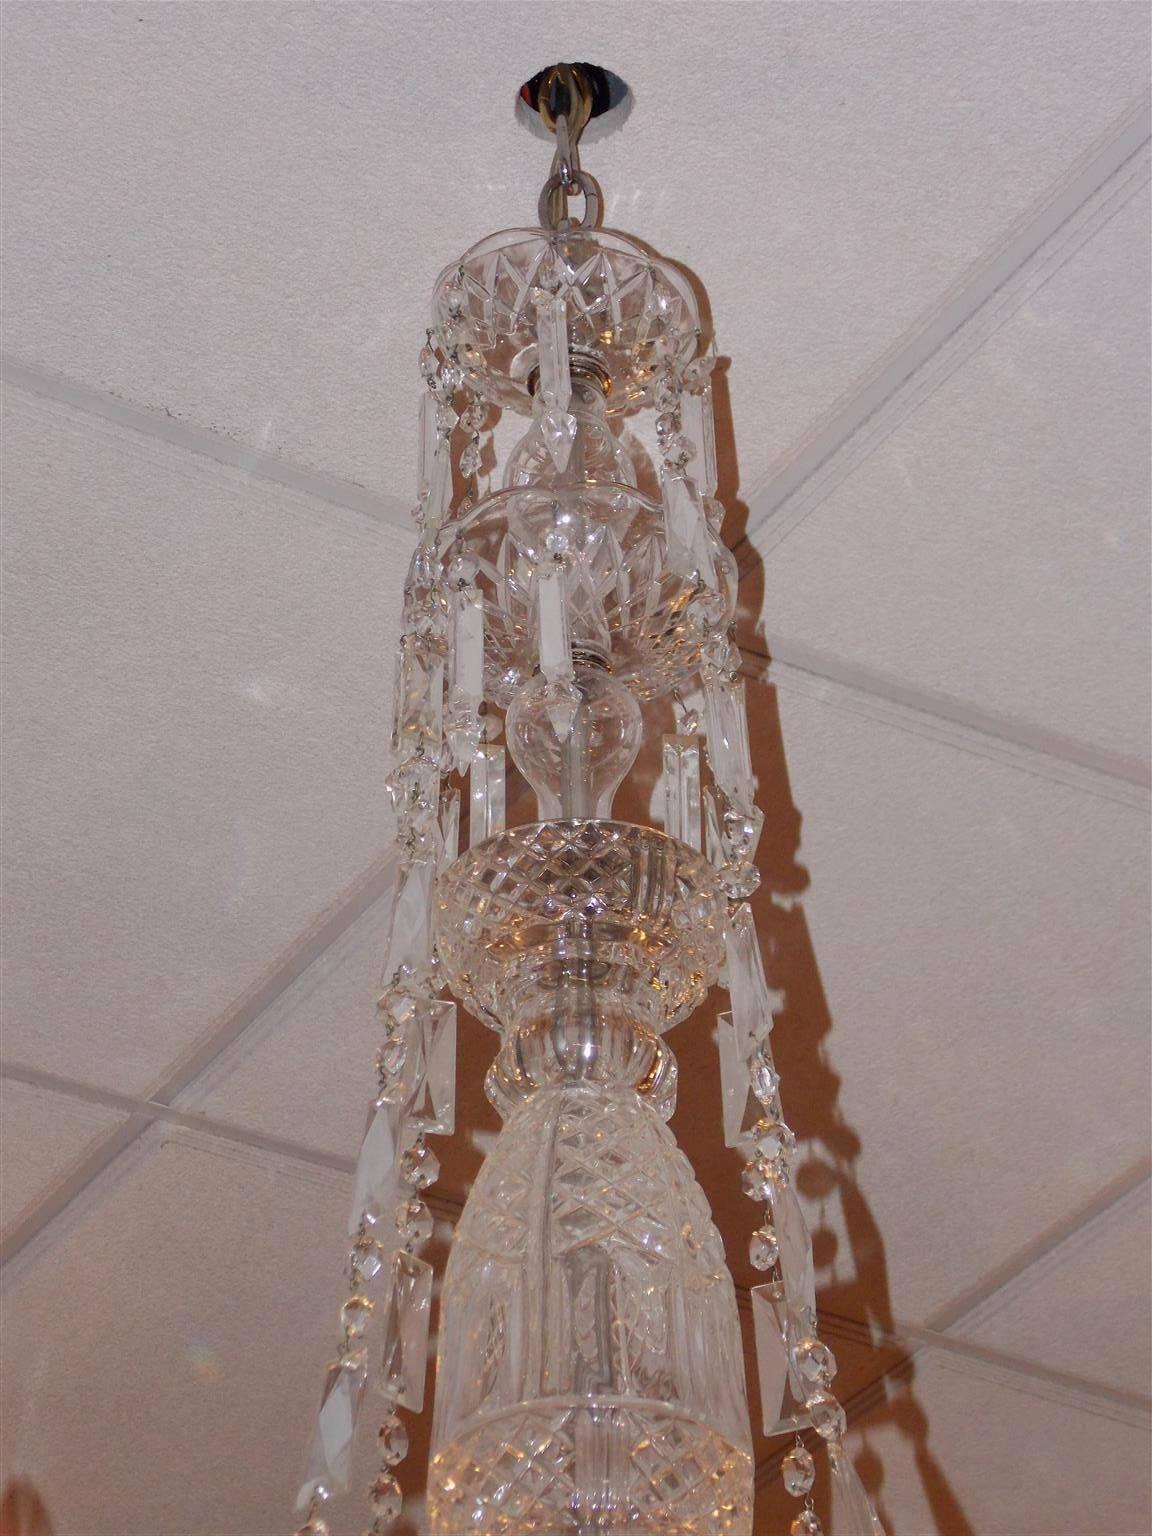 Lustre en cristal taillé anglais avec une colonne centrale en cristal bulbeux, quatre bras en spirale à volutes, des prismes de connexion en cascade, et se terminant par une grande coupe en cristal taillé et une boule à facettes. Fin du 19e siècle.